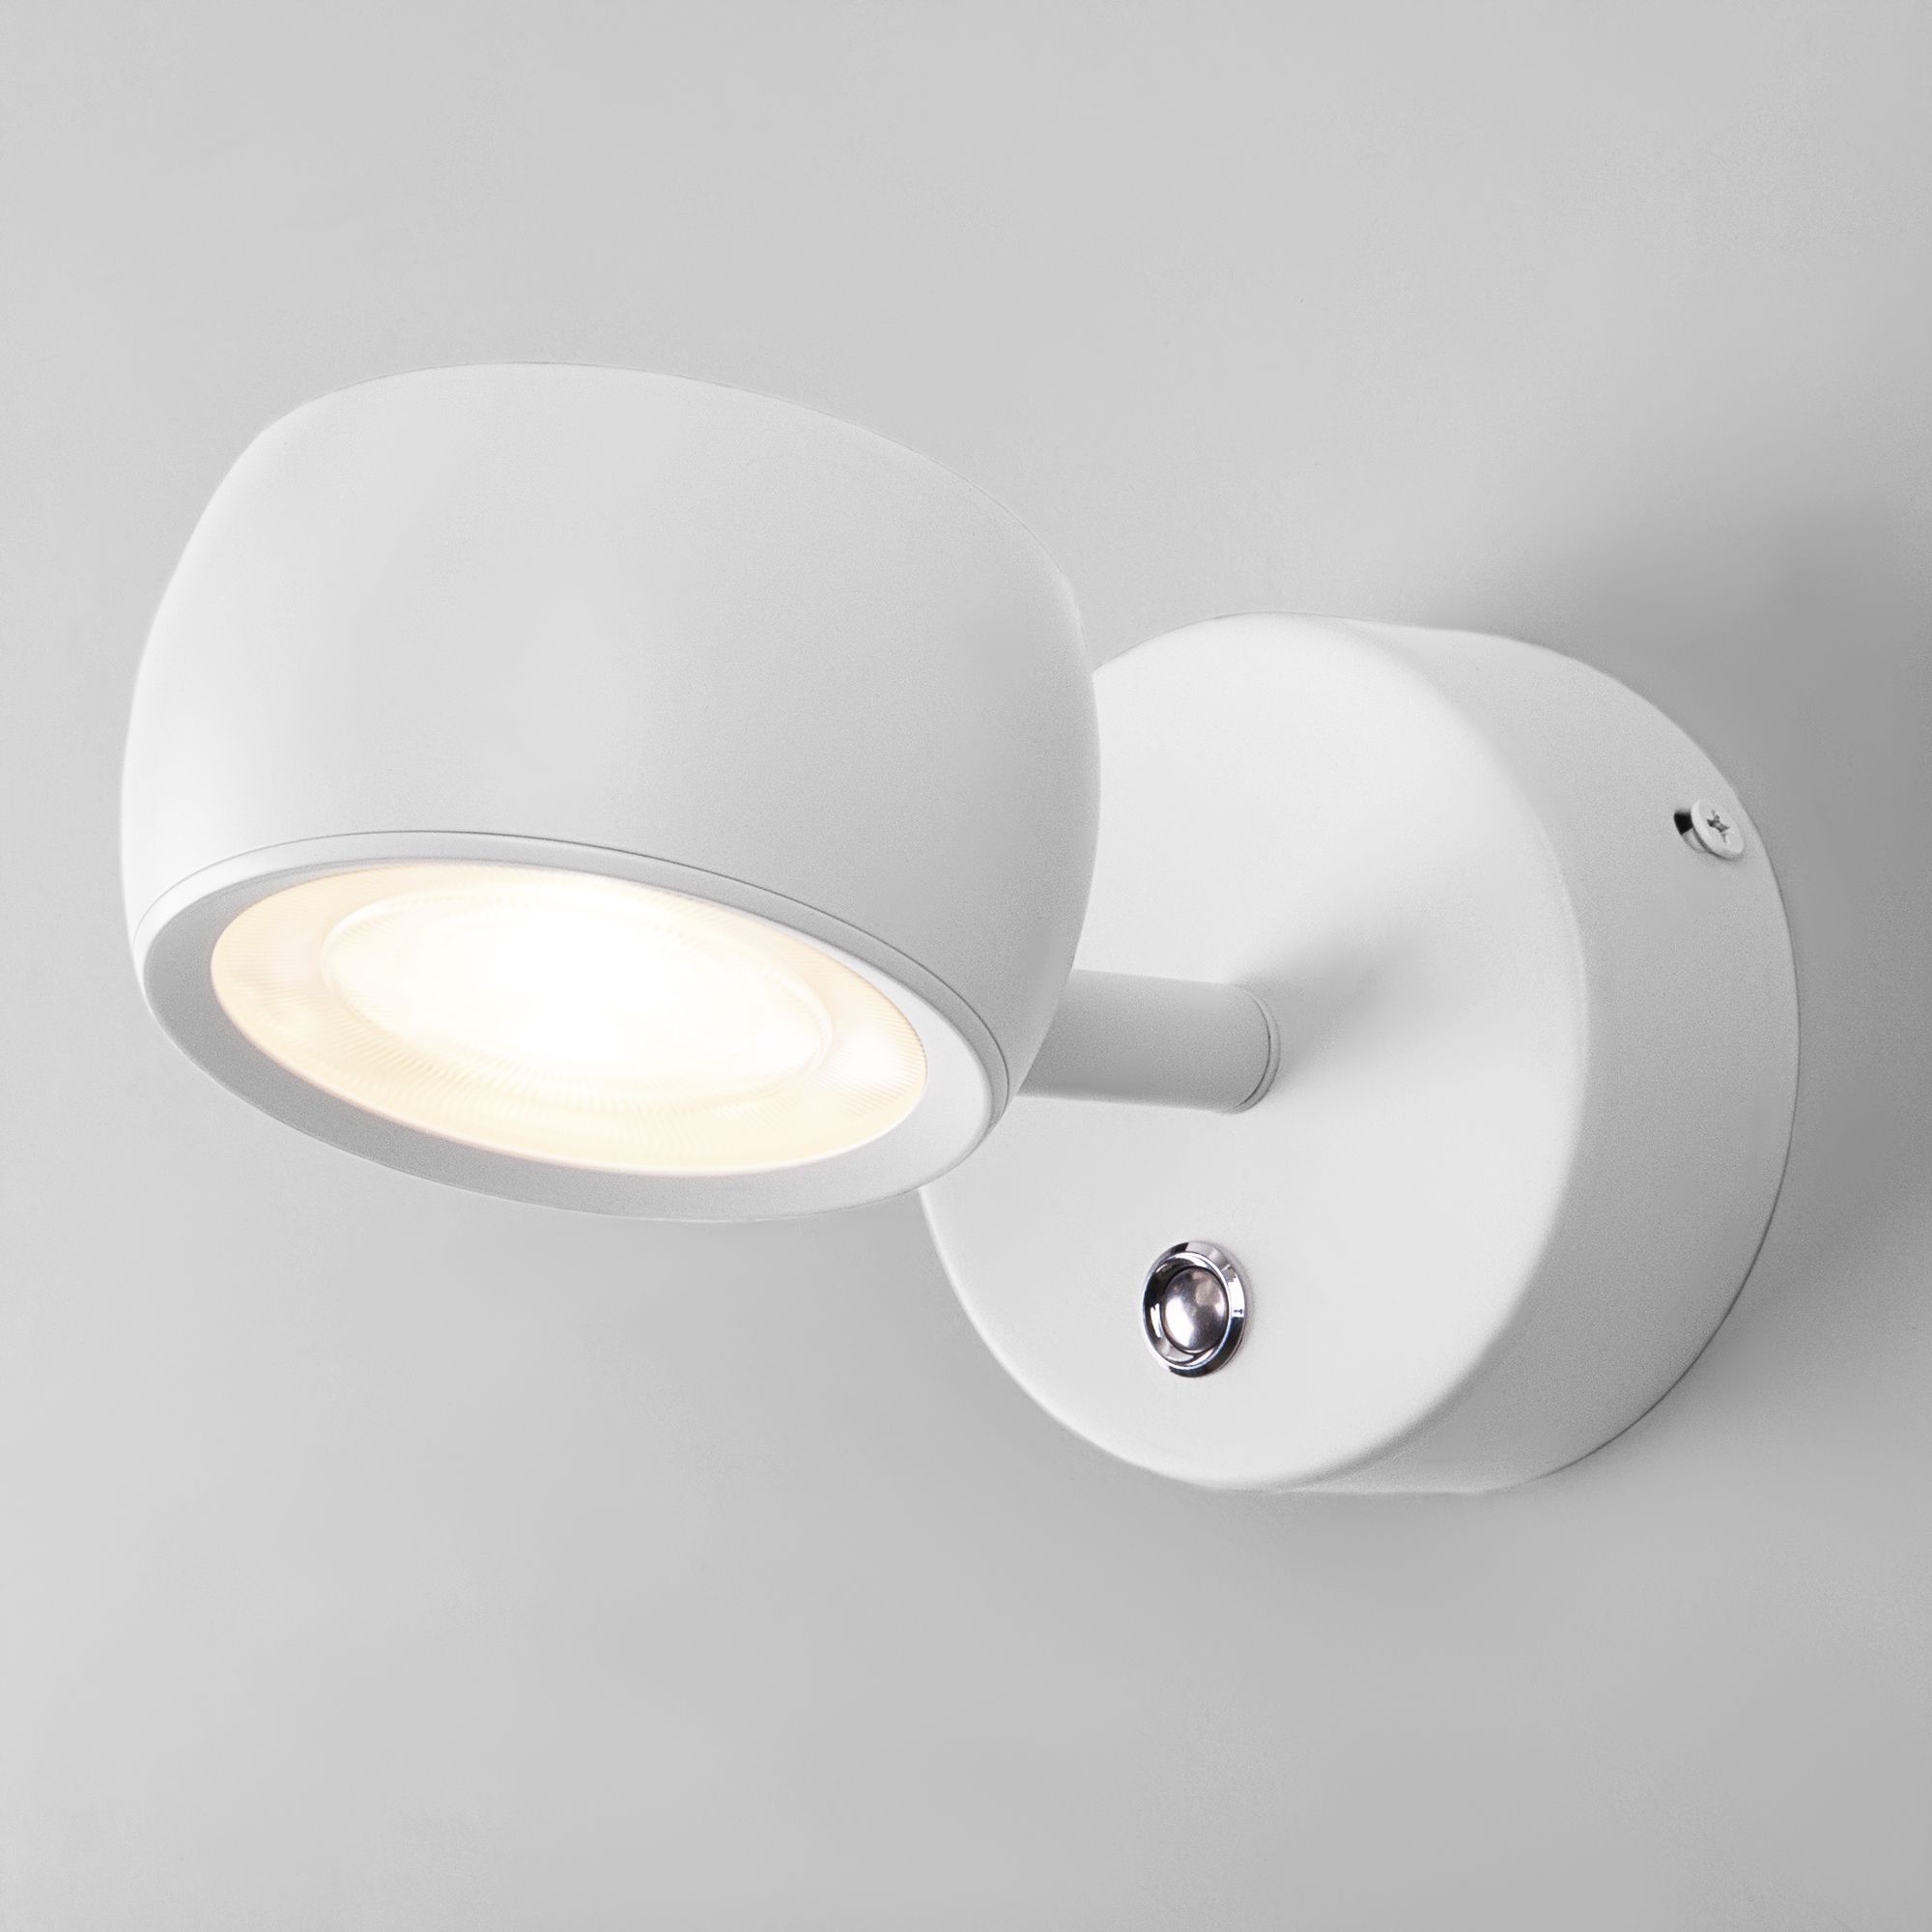 Настенный светодиодный светильник Oriol LED Elektrostandard Oriol MRL LED 1018 белый. Фото 1